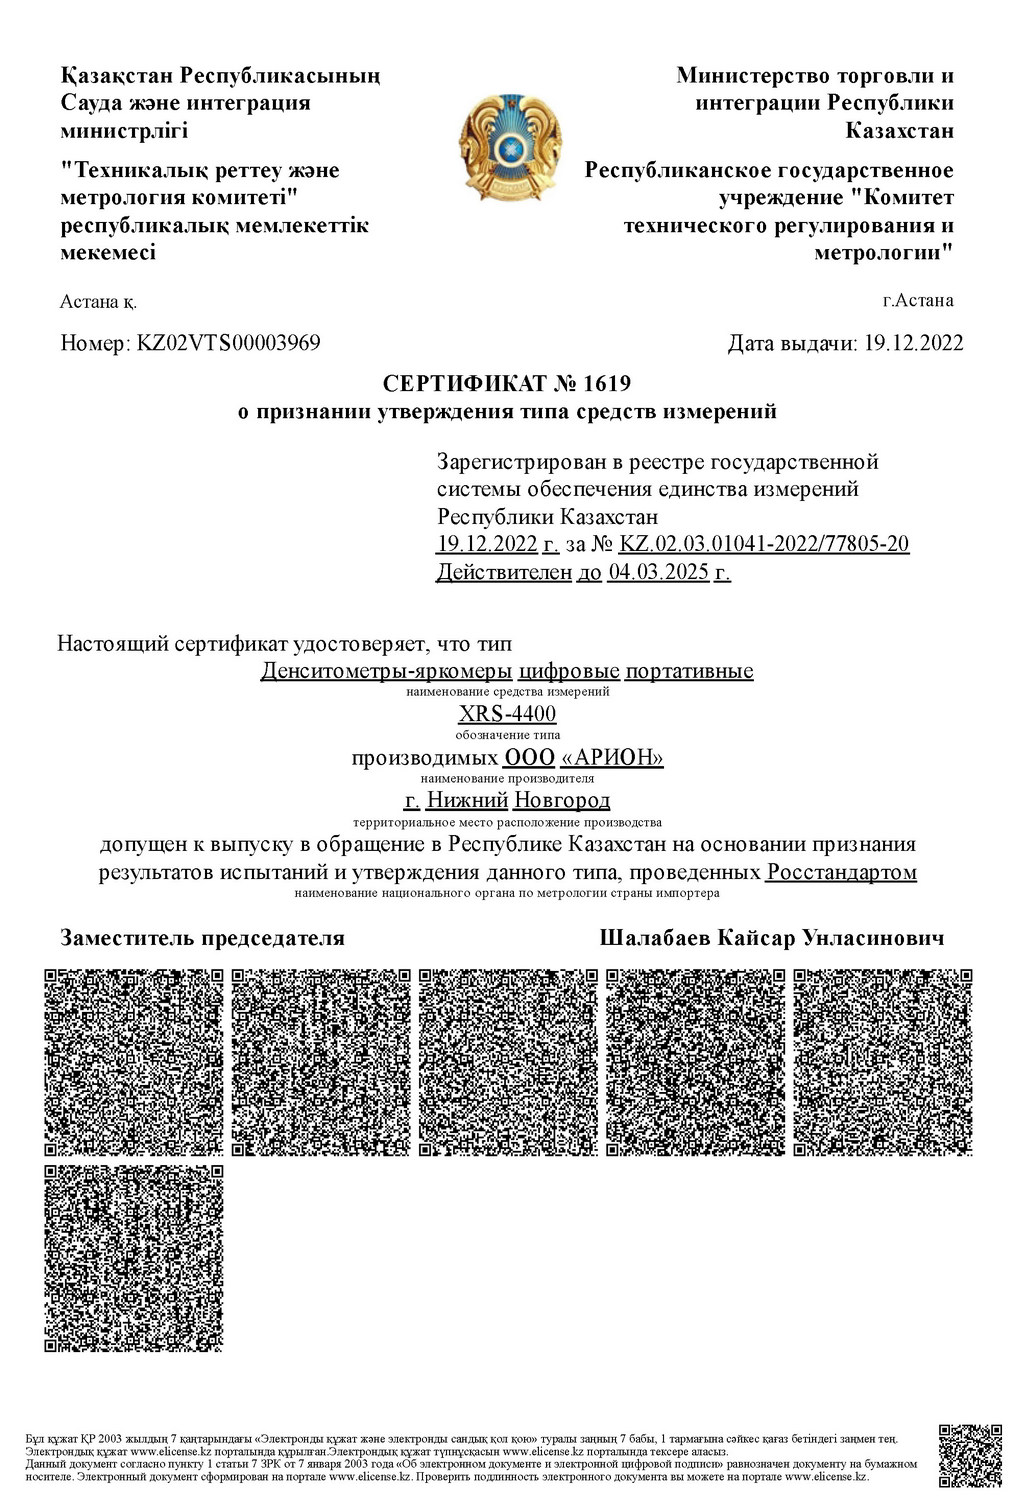 Сертификат утверждения типа СИ в Республике Казахстан